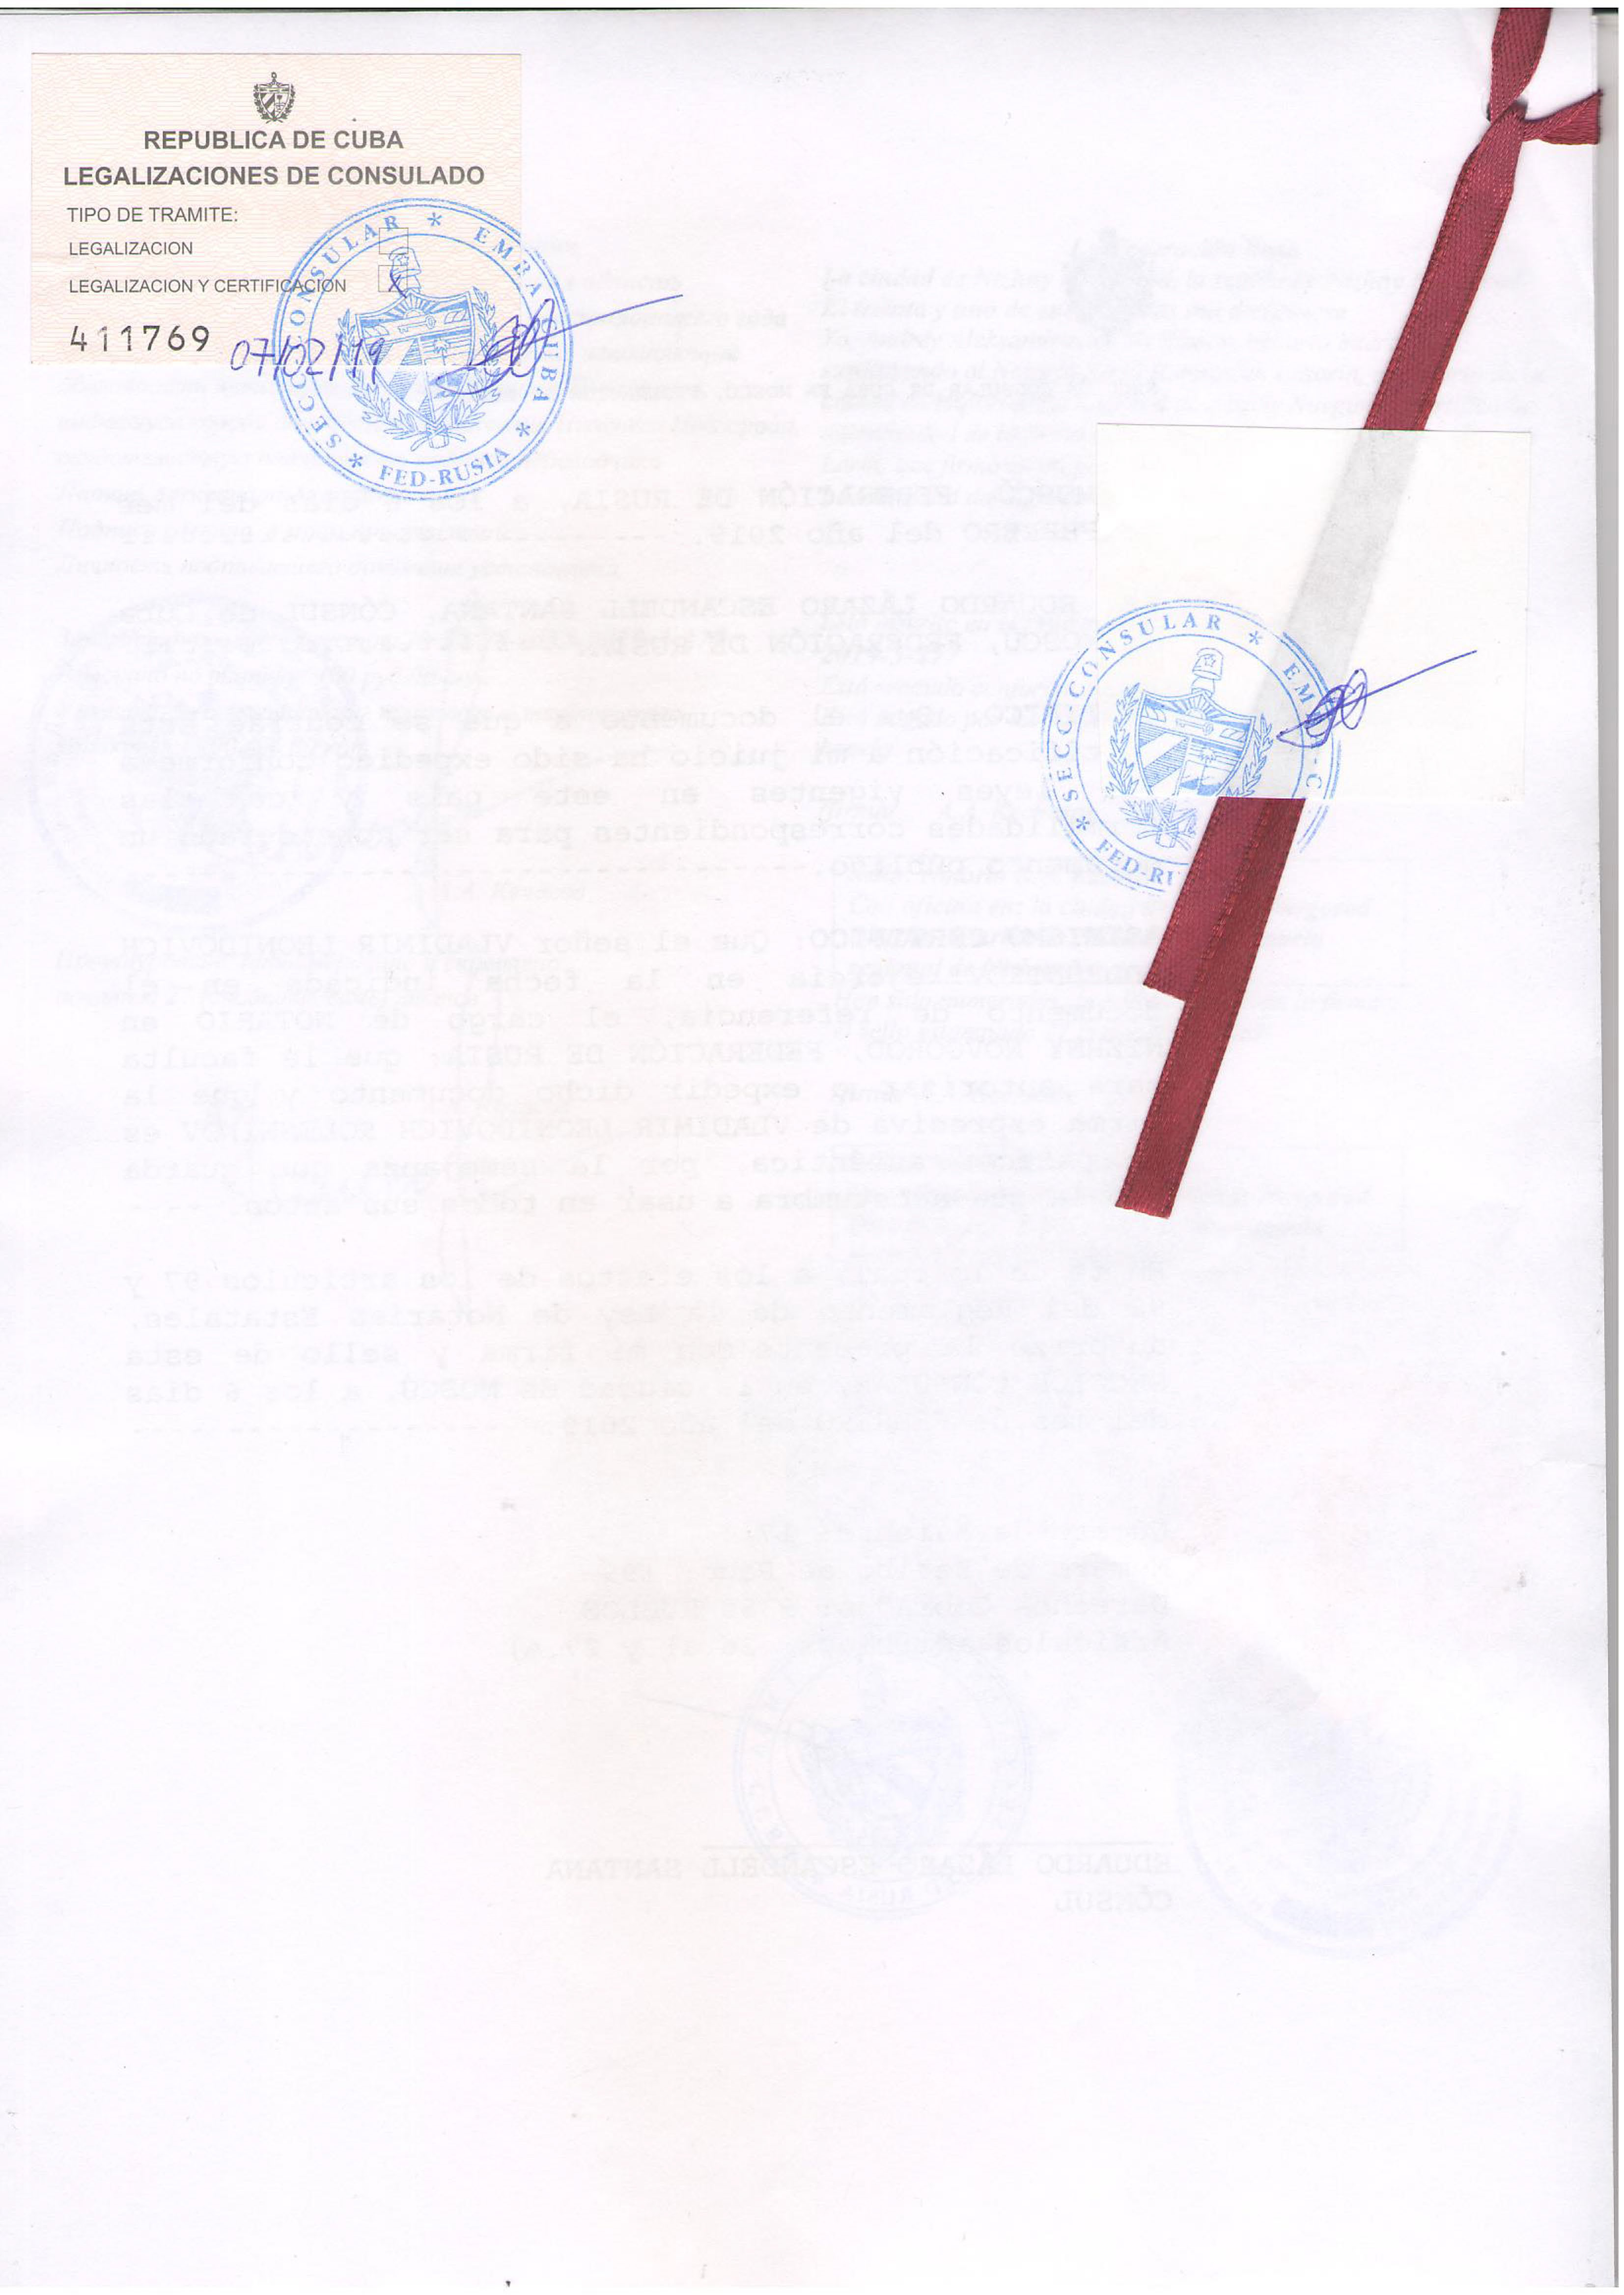 Образец легализации коммерческого документа для Кубы